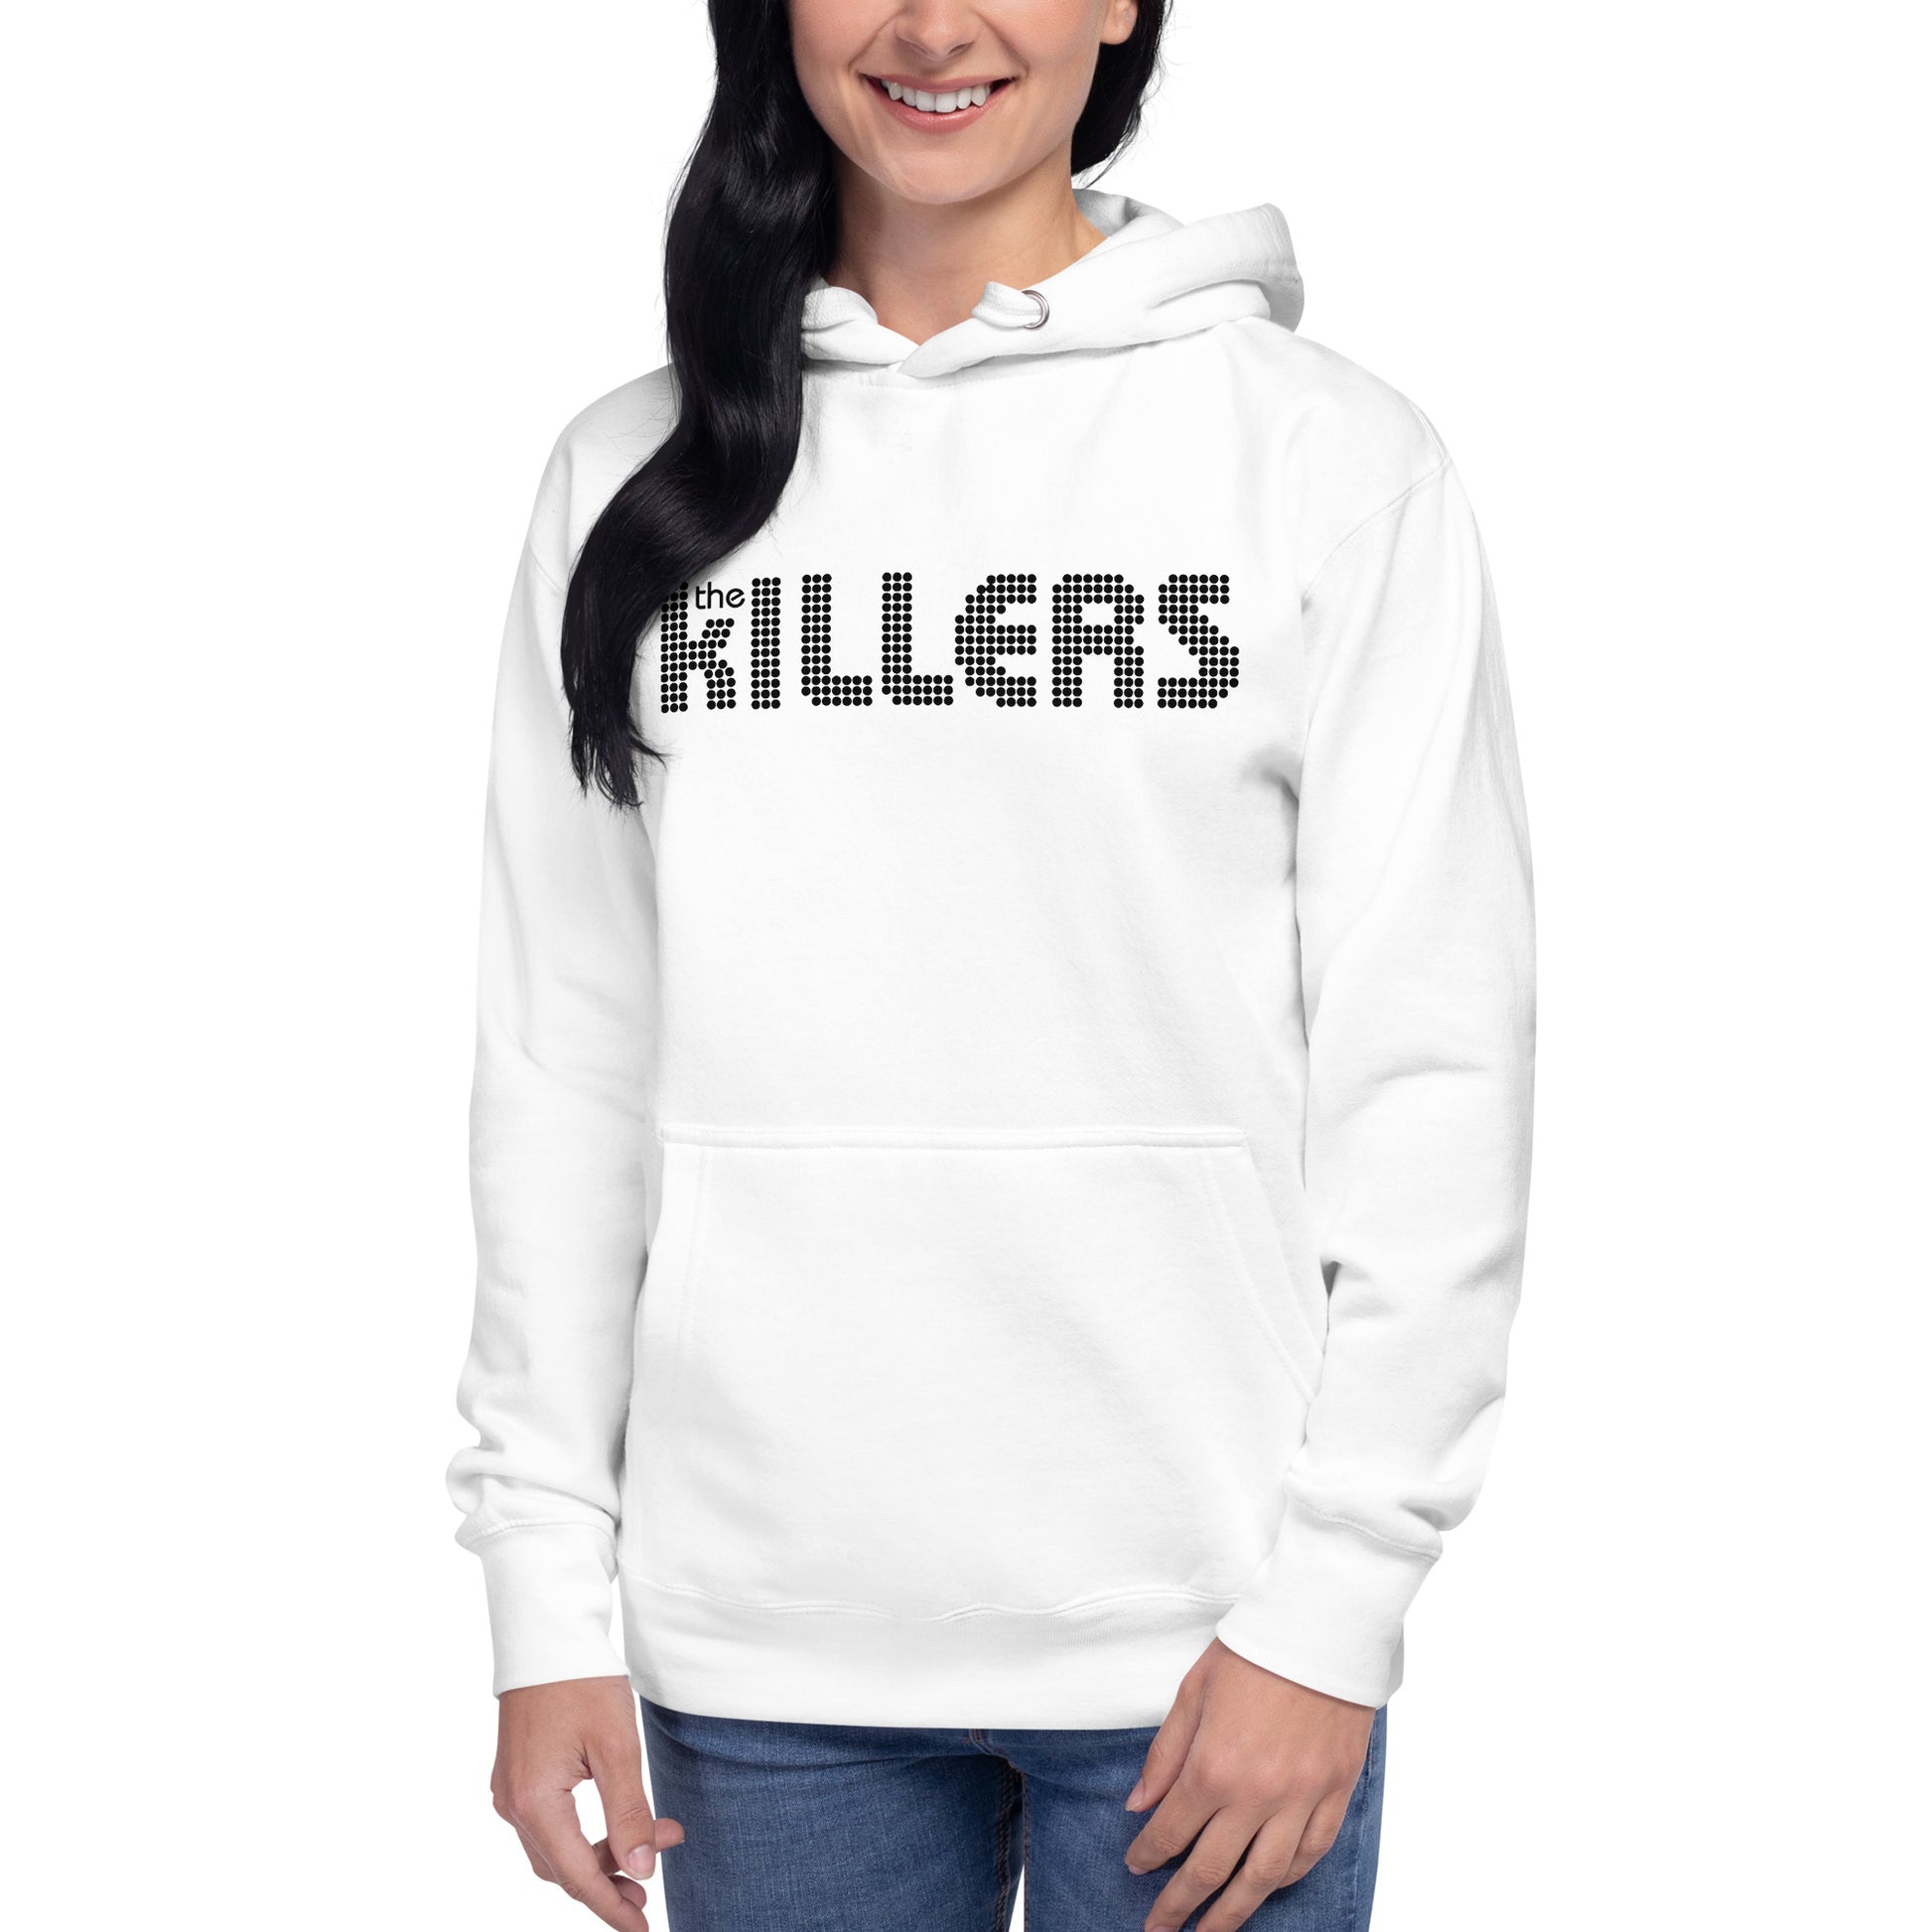 Hoodie The Killers, Disponible en la mejor tienda online para comprar tu merch favorita, la mejor Calidad, compra Ahora en Superstar!